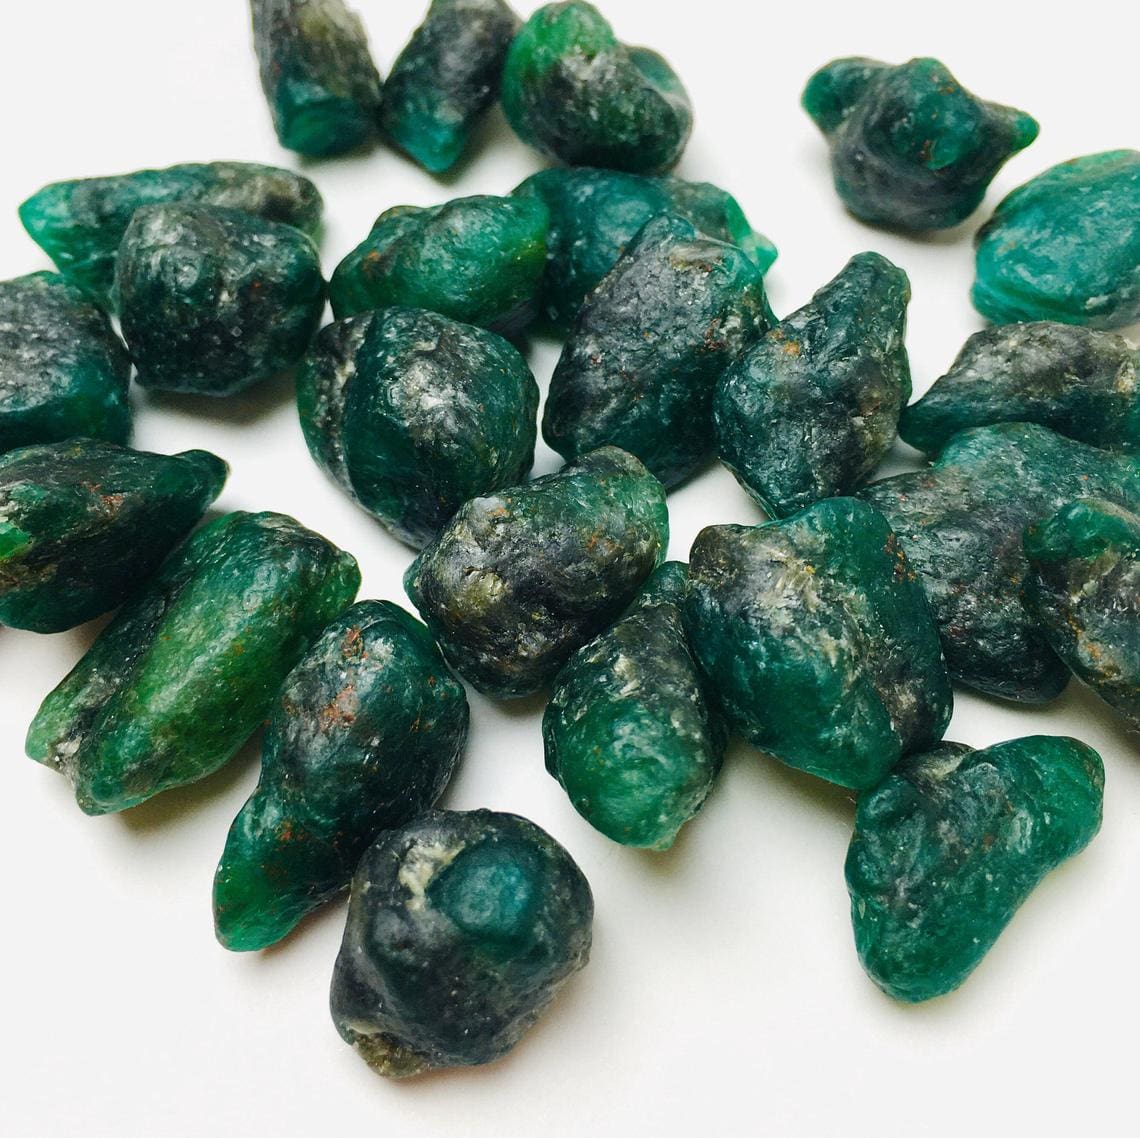 Pedras esmeraldas cruas de várias cores